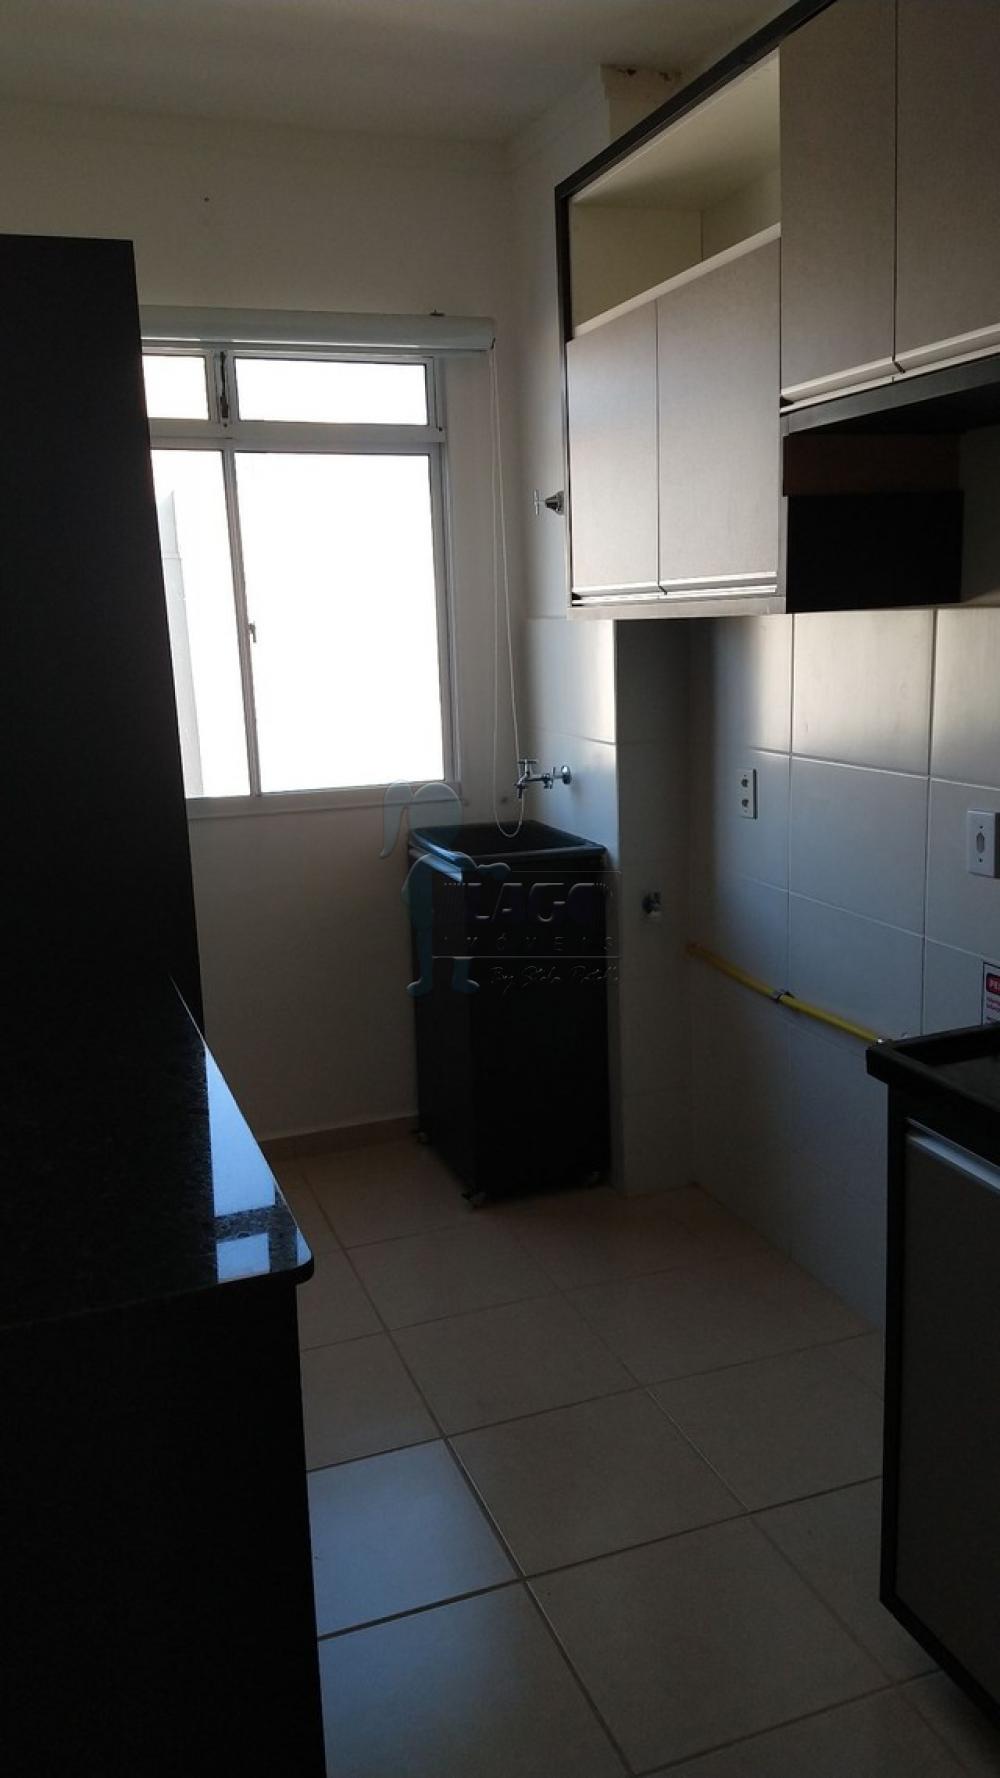 Alugar Apartamentos / Padrão em Ribeirão Preto R$ 950,00 - Foto 9